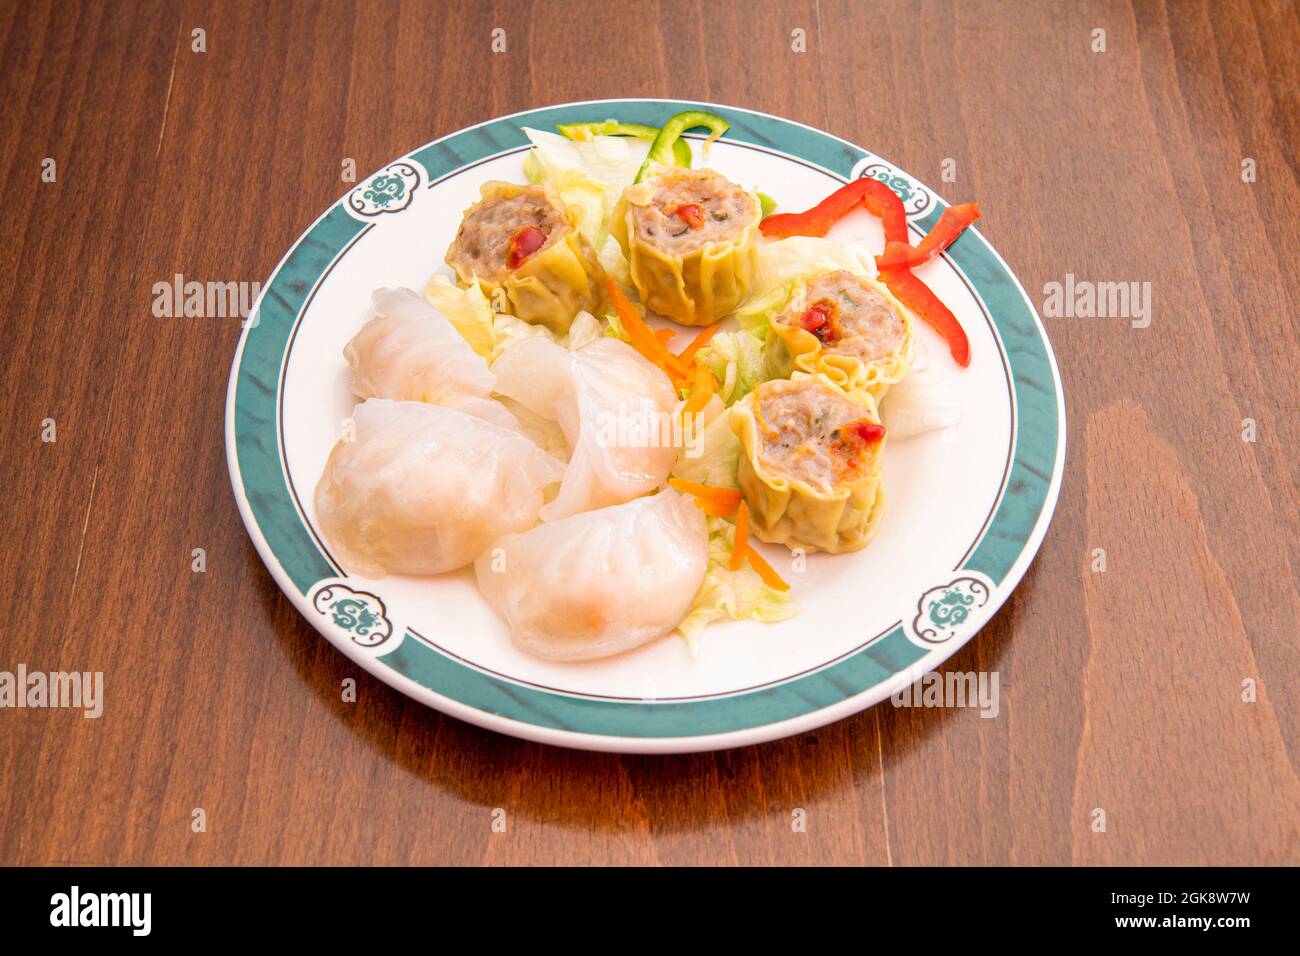 Piatto di dim sum cinese ripieno assortito con gamberi, maiale e verdure su tavola di legno Foto Stock